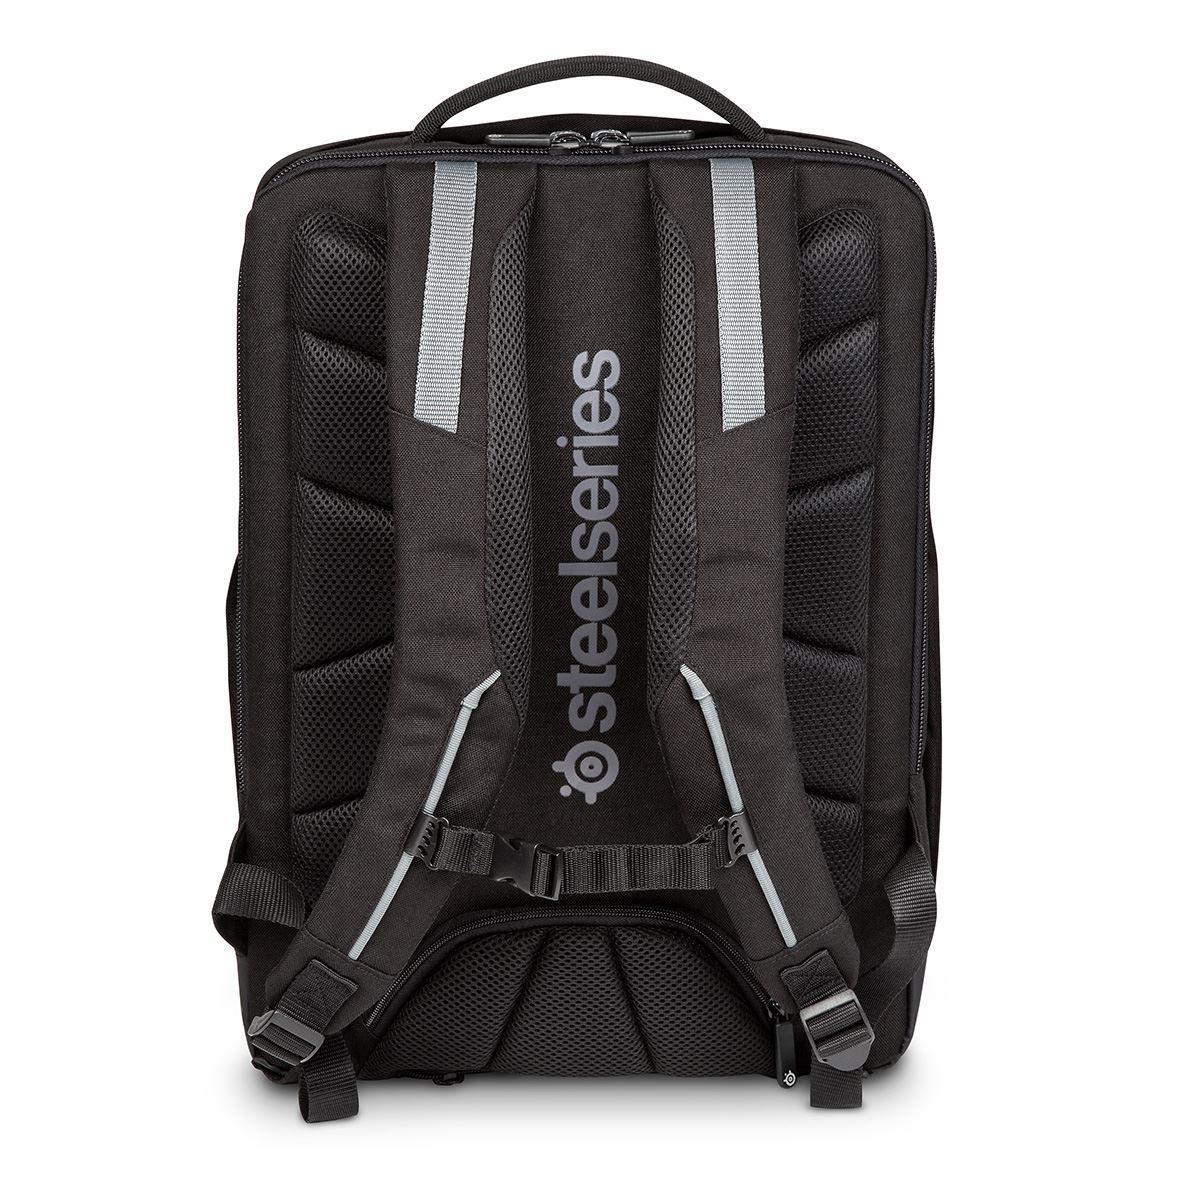 Targus TSB941BT 17.3 SteelSeries X Targus Gaming Backpack